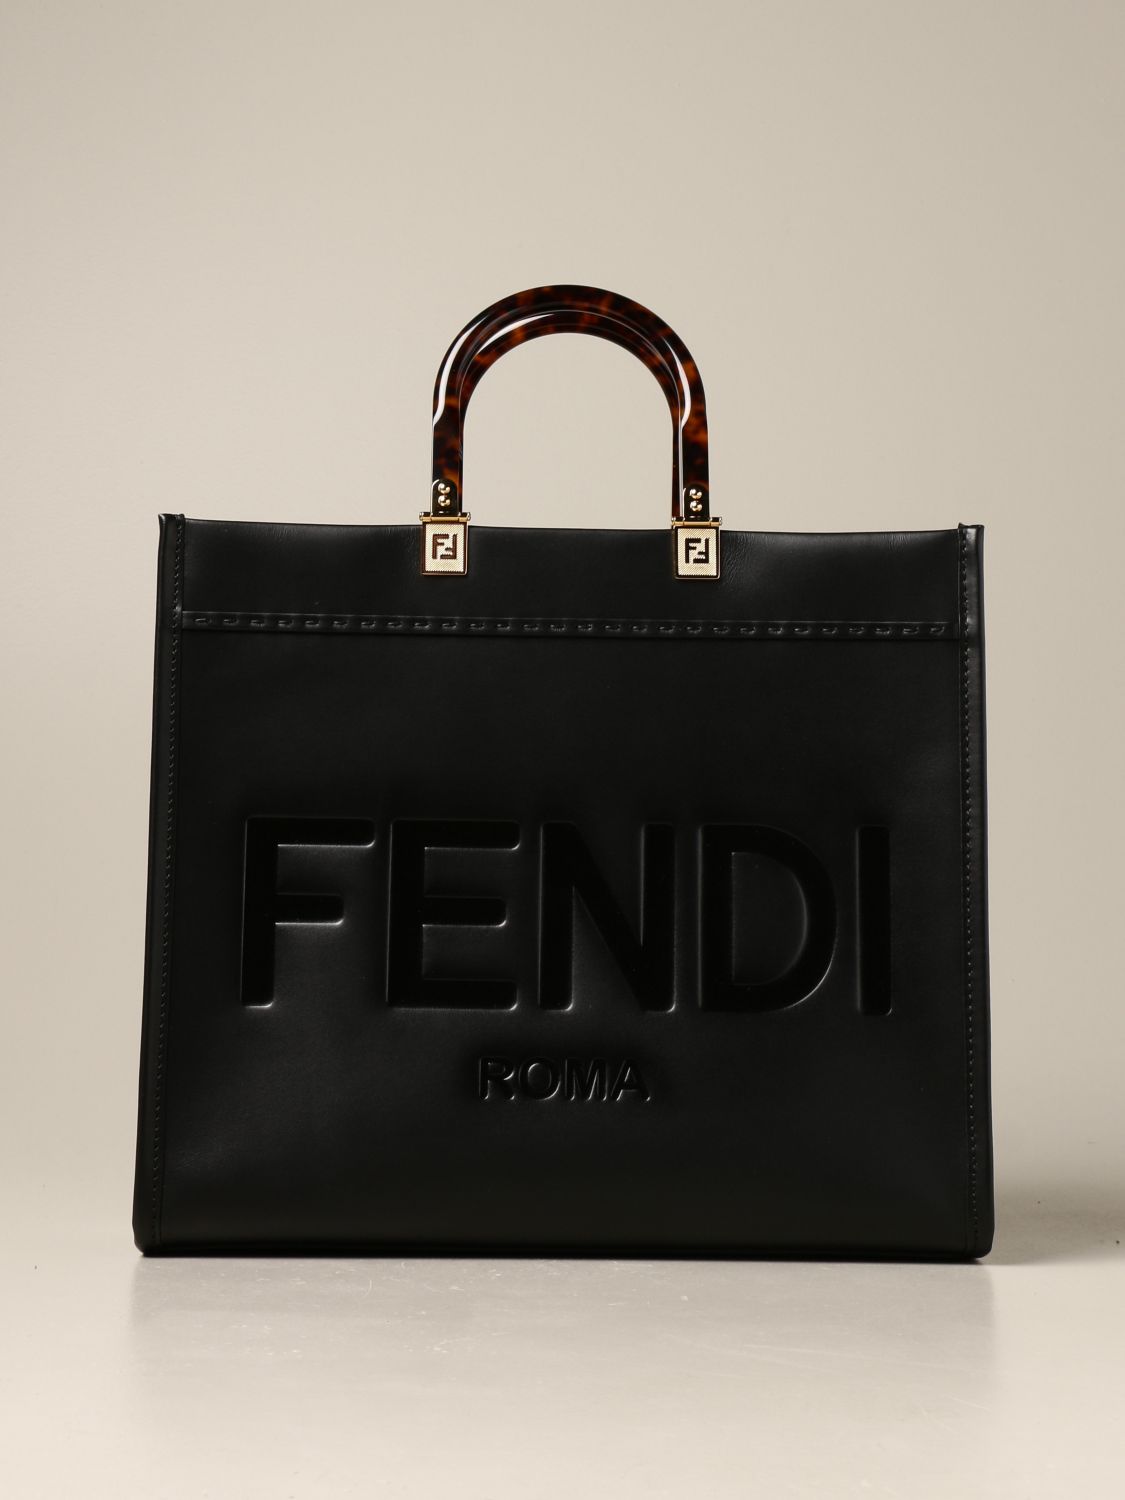 FENDI: Shoulder bag women | Shoulder Bag Fendi Women Black | Shoulder ...